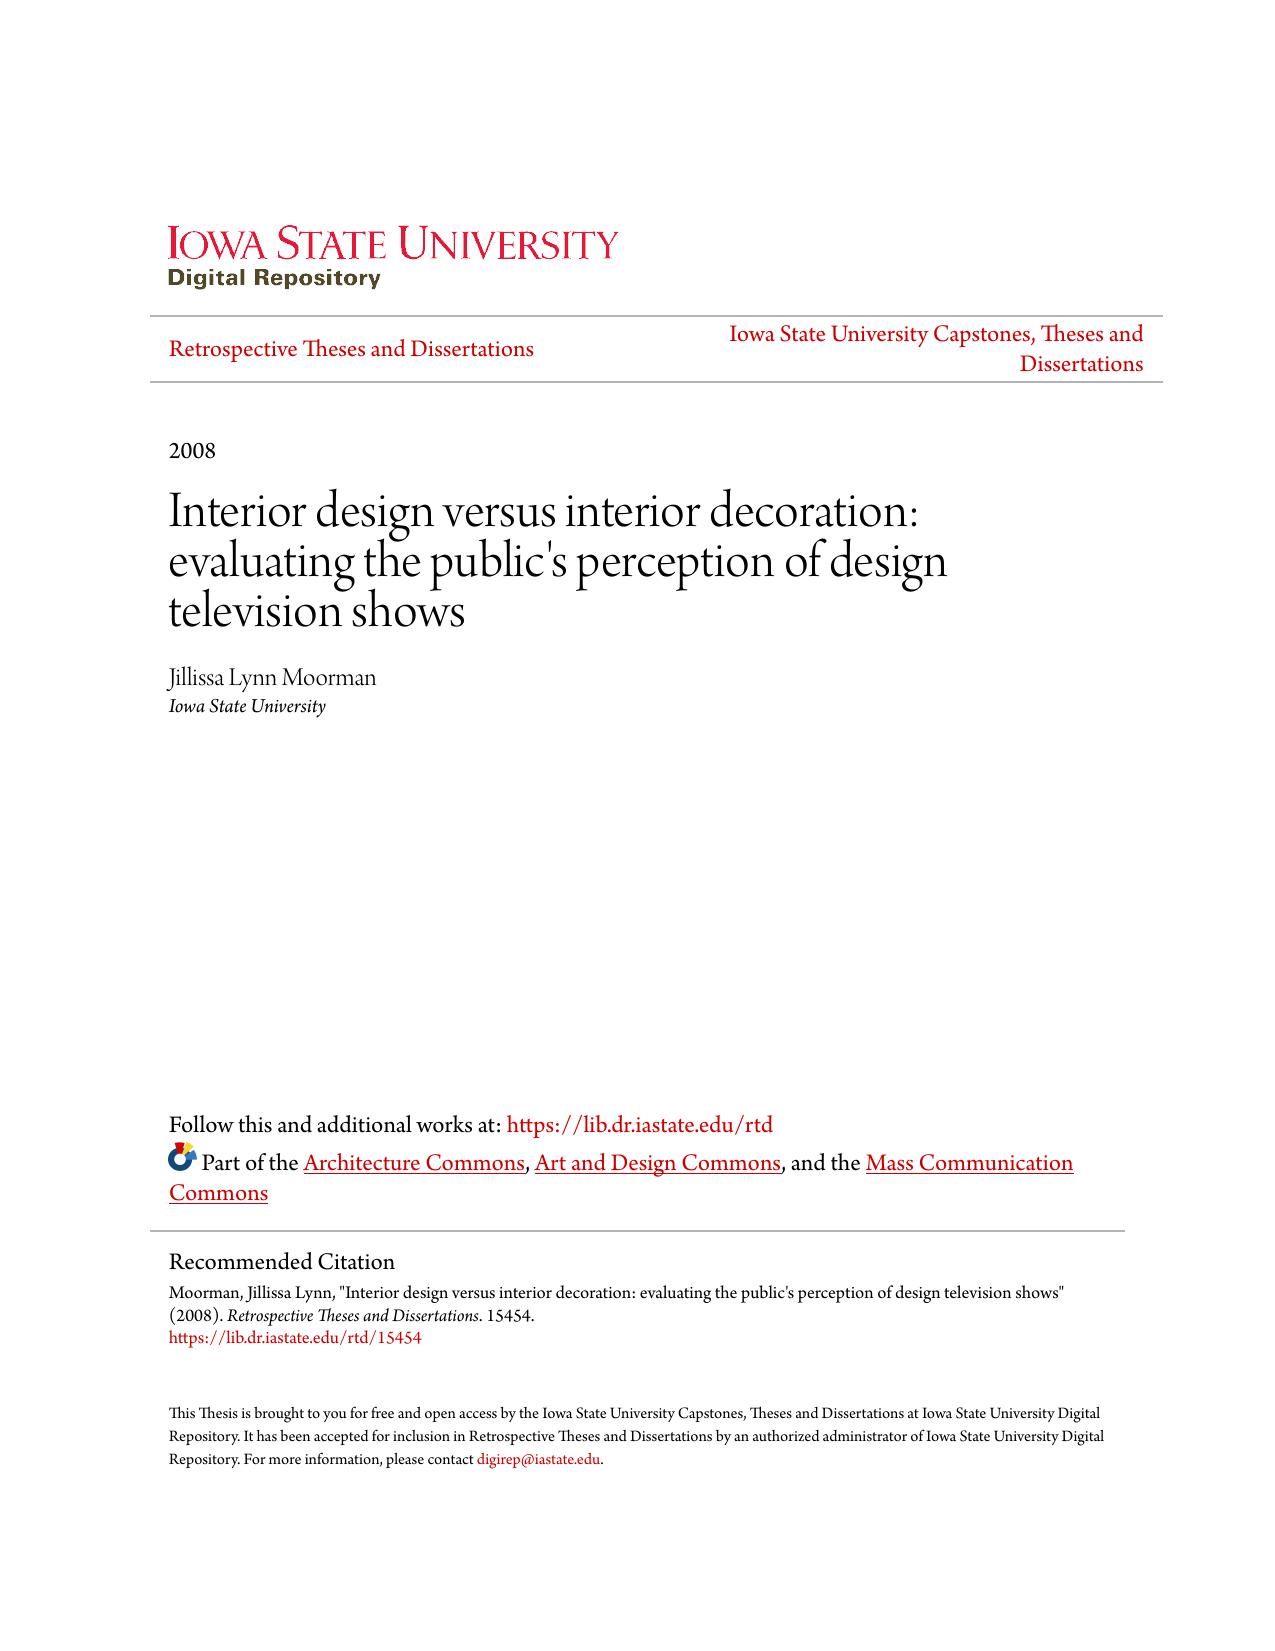 Interior design versus interior decoration: evaluating the public's perception of design television shows